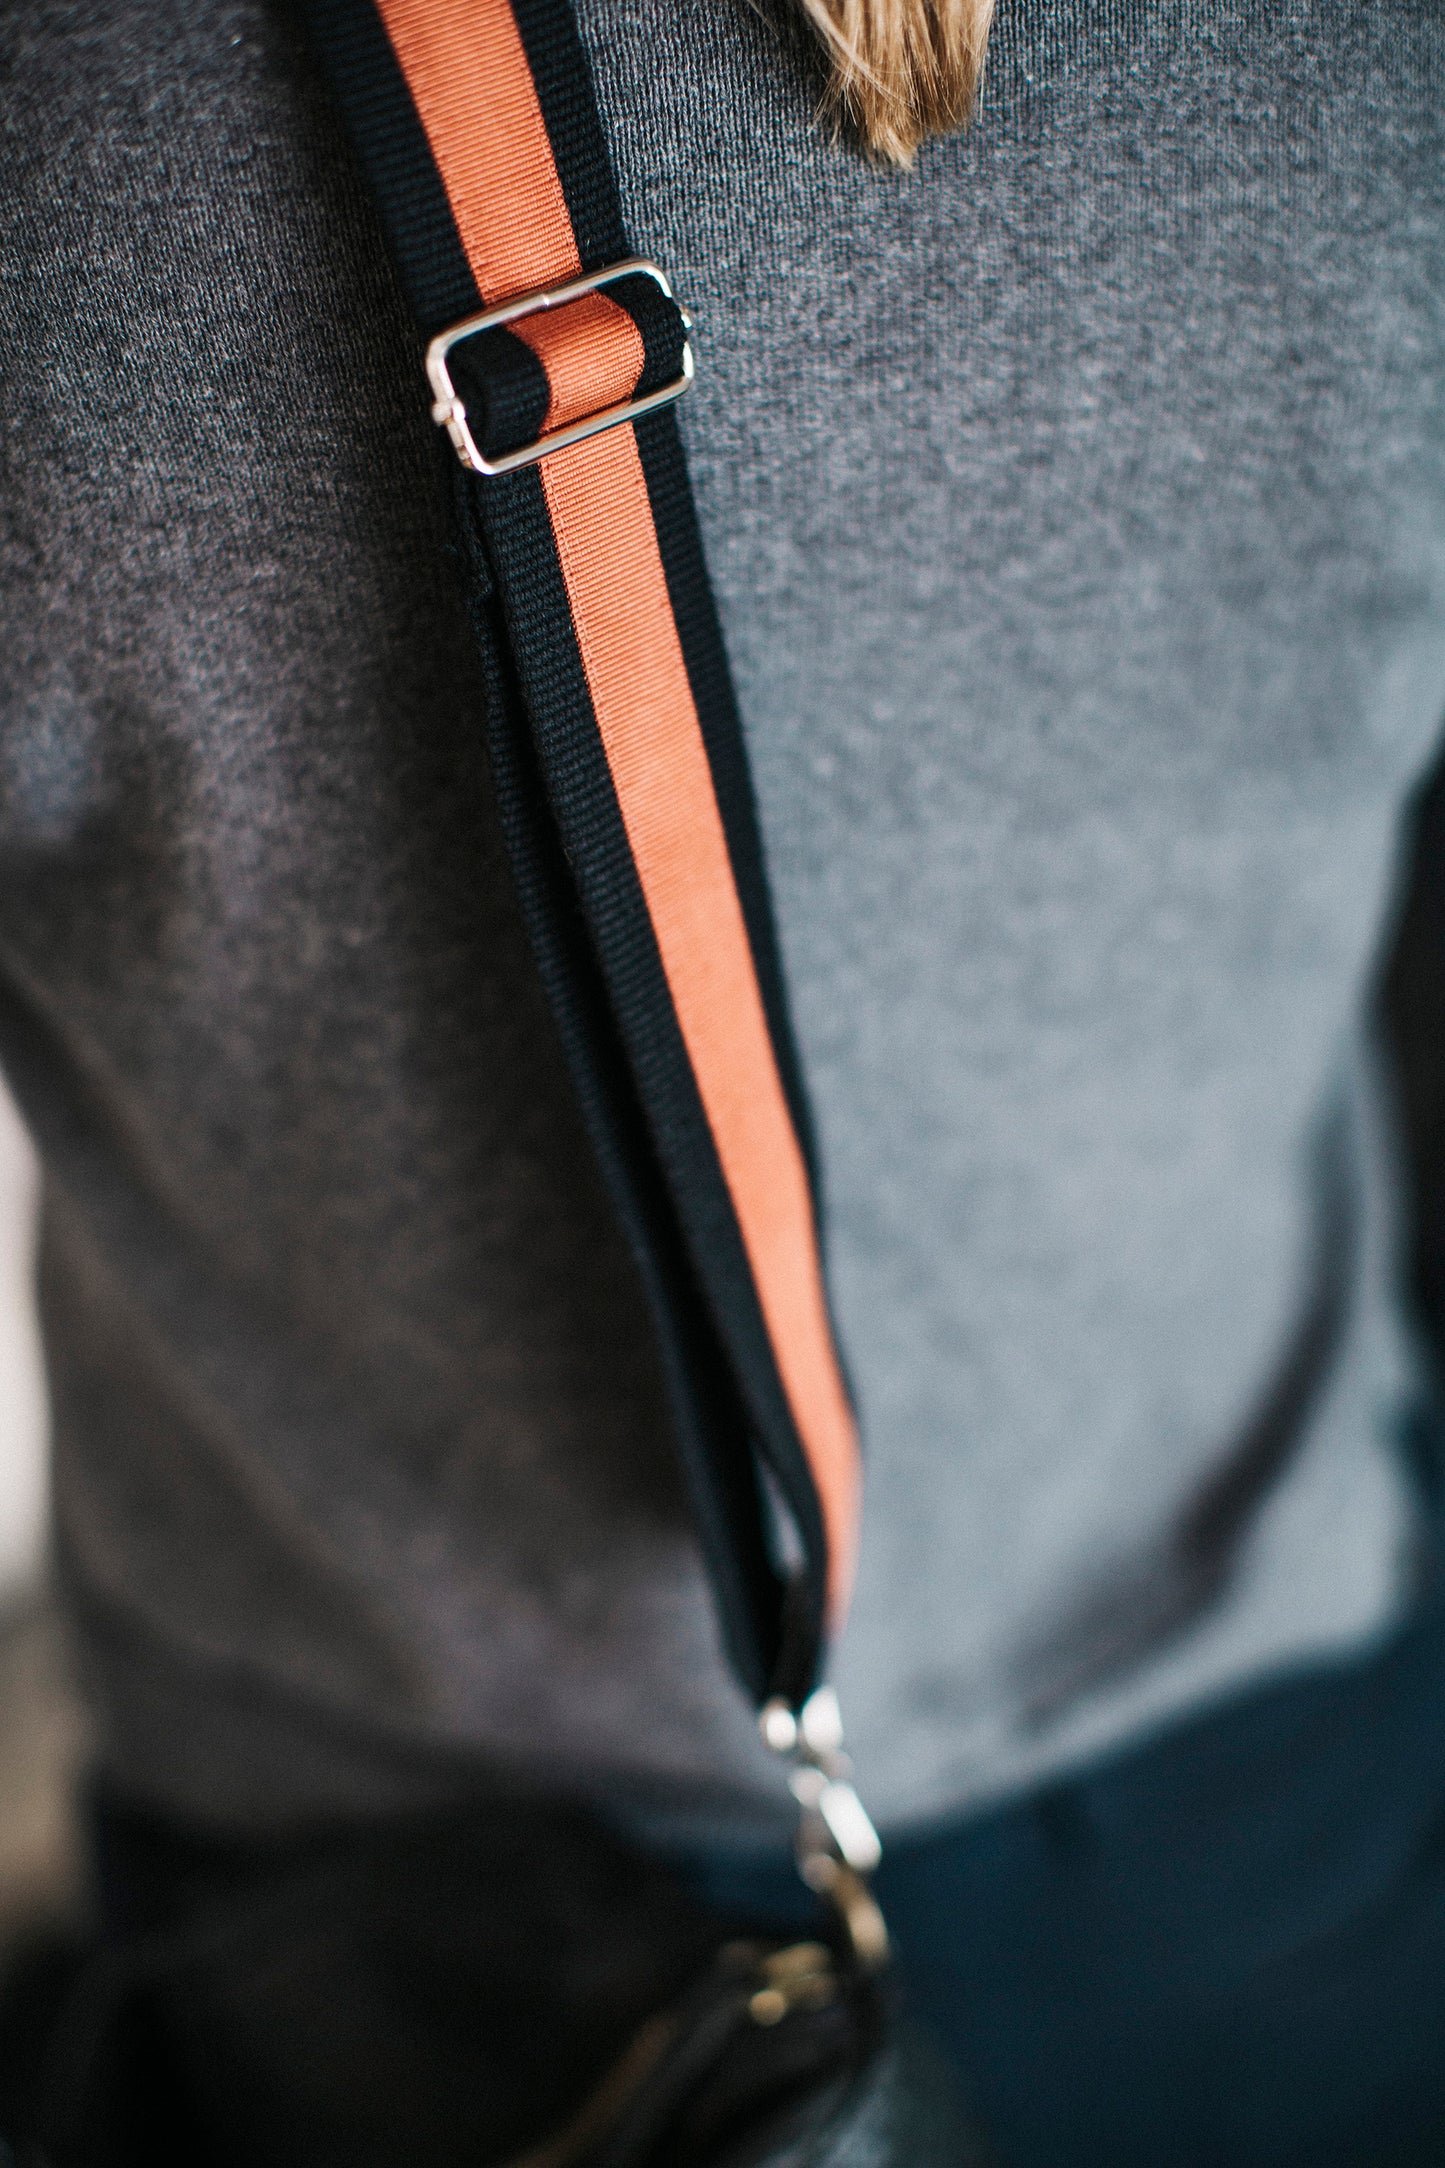 Shoulder bag handle - black and orange